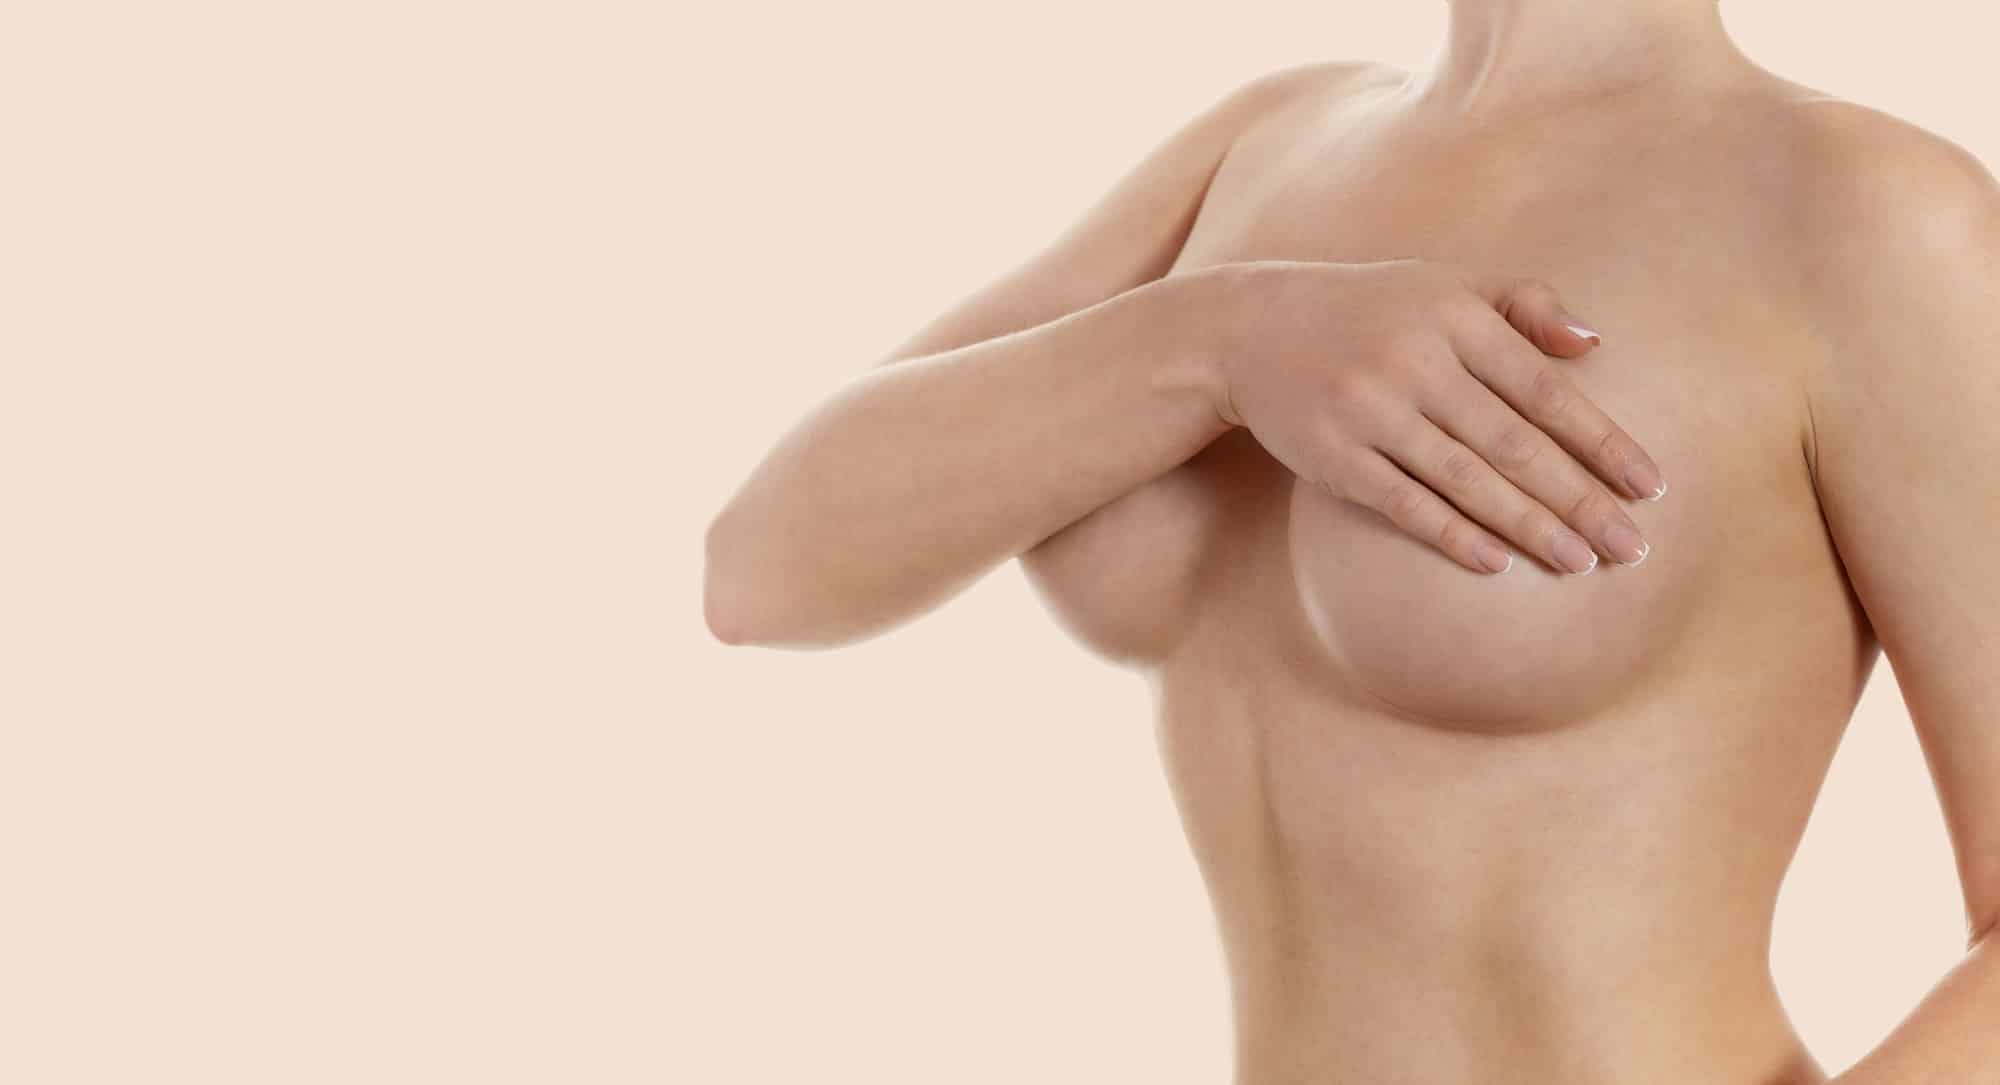 Quels sont les avantages d’une implantation de prothèses mammaires ?